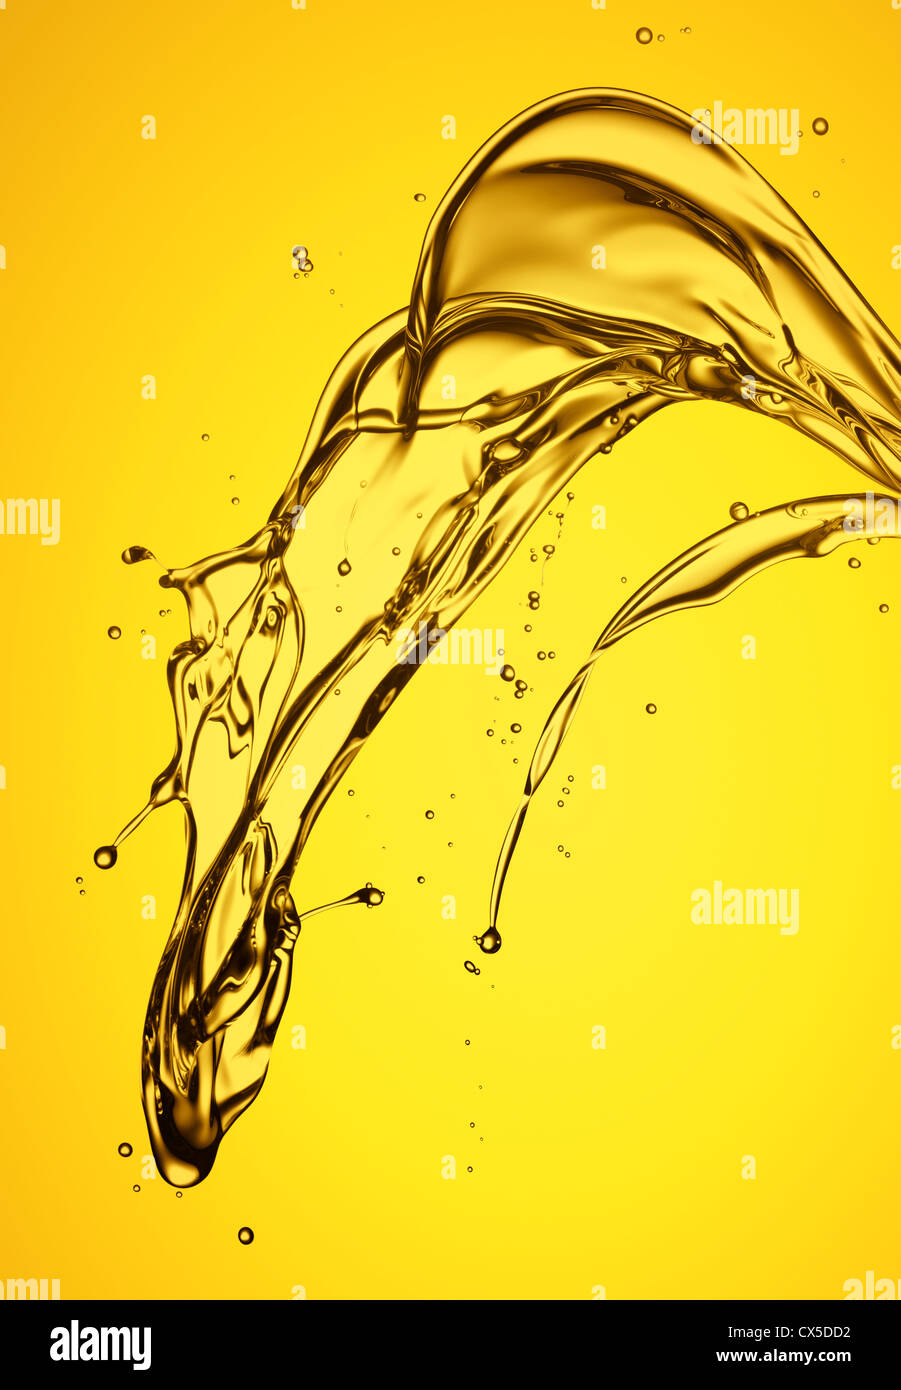 Las salpicaduras de aceite de color dorado con fondo amarillo Foto de stock